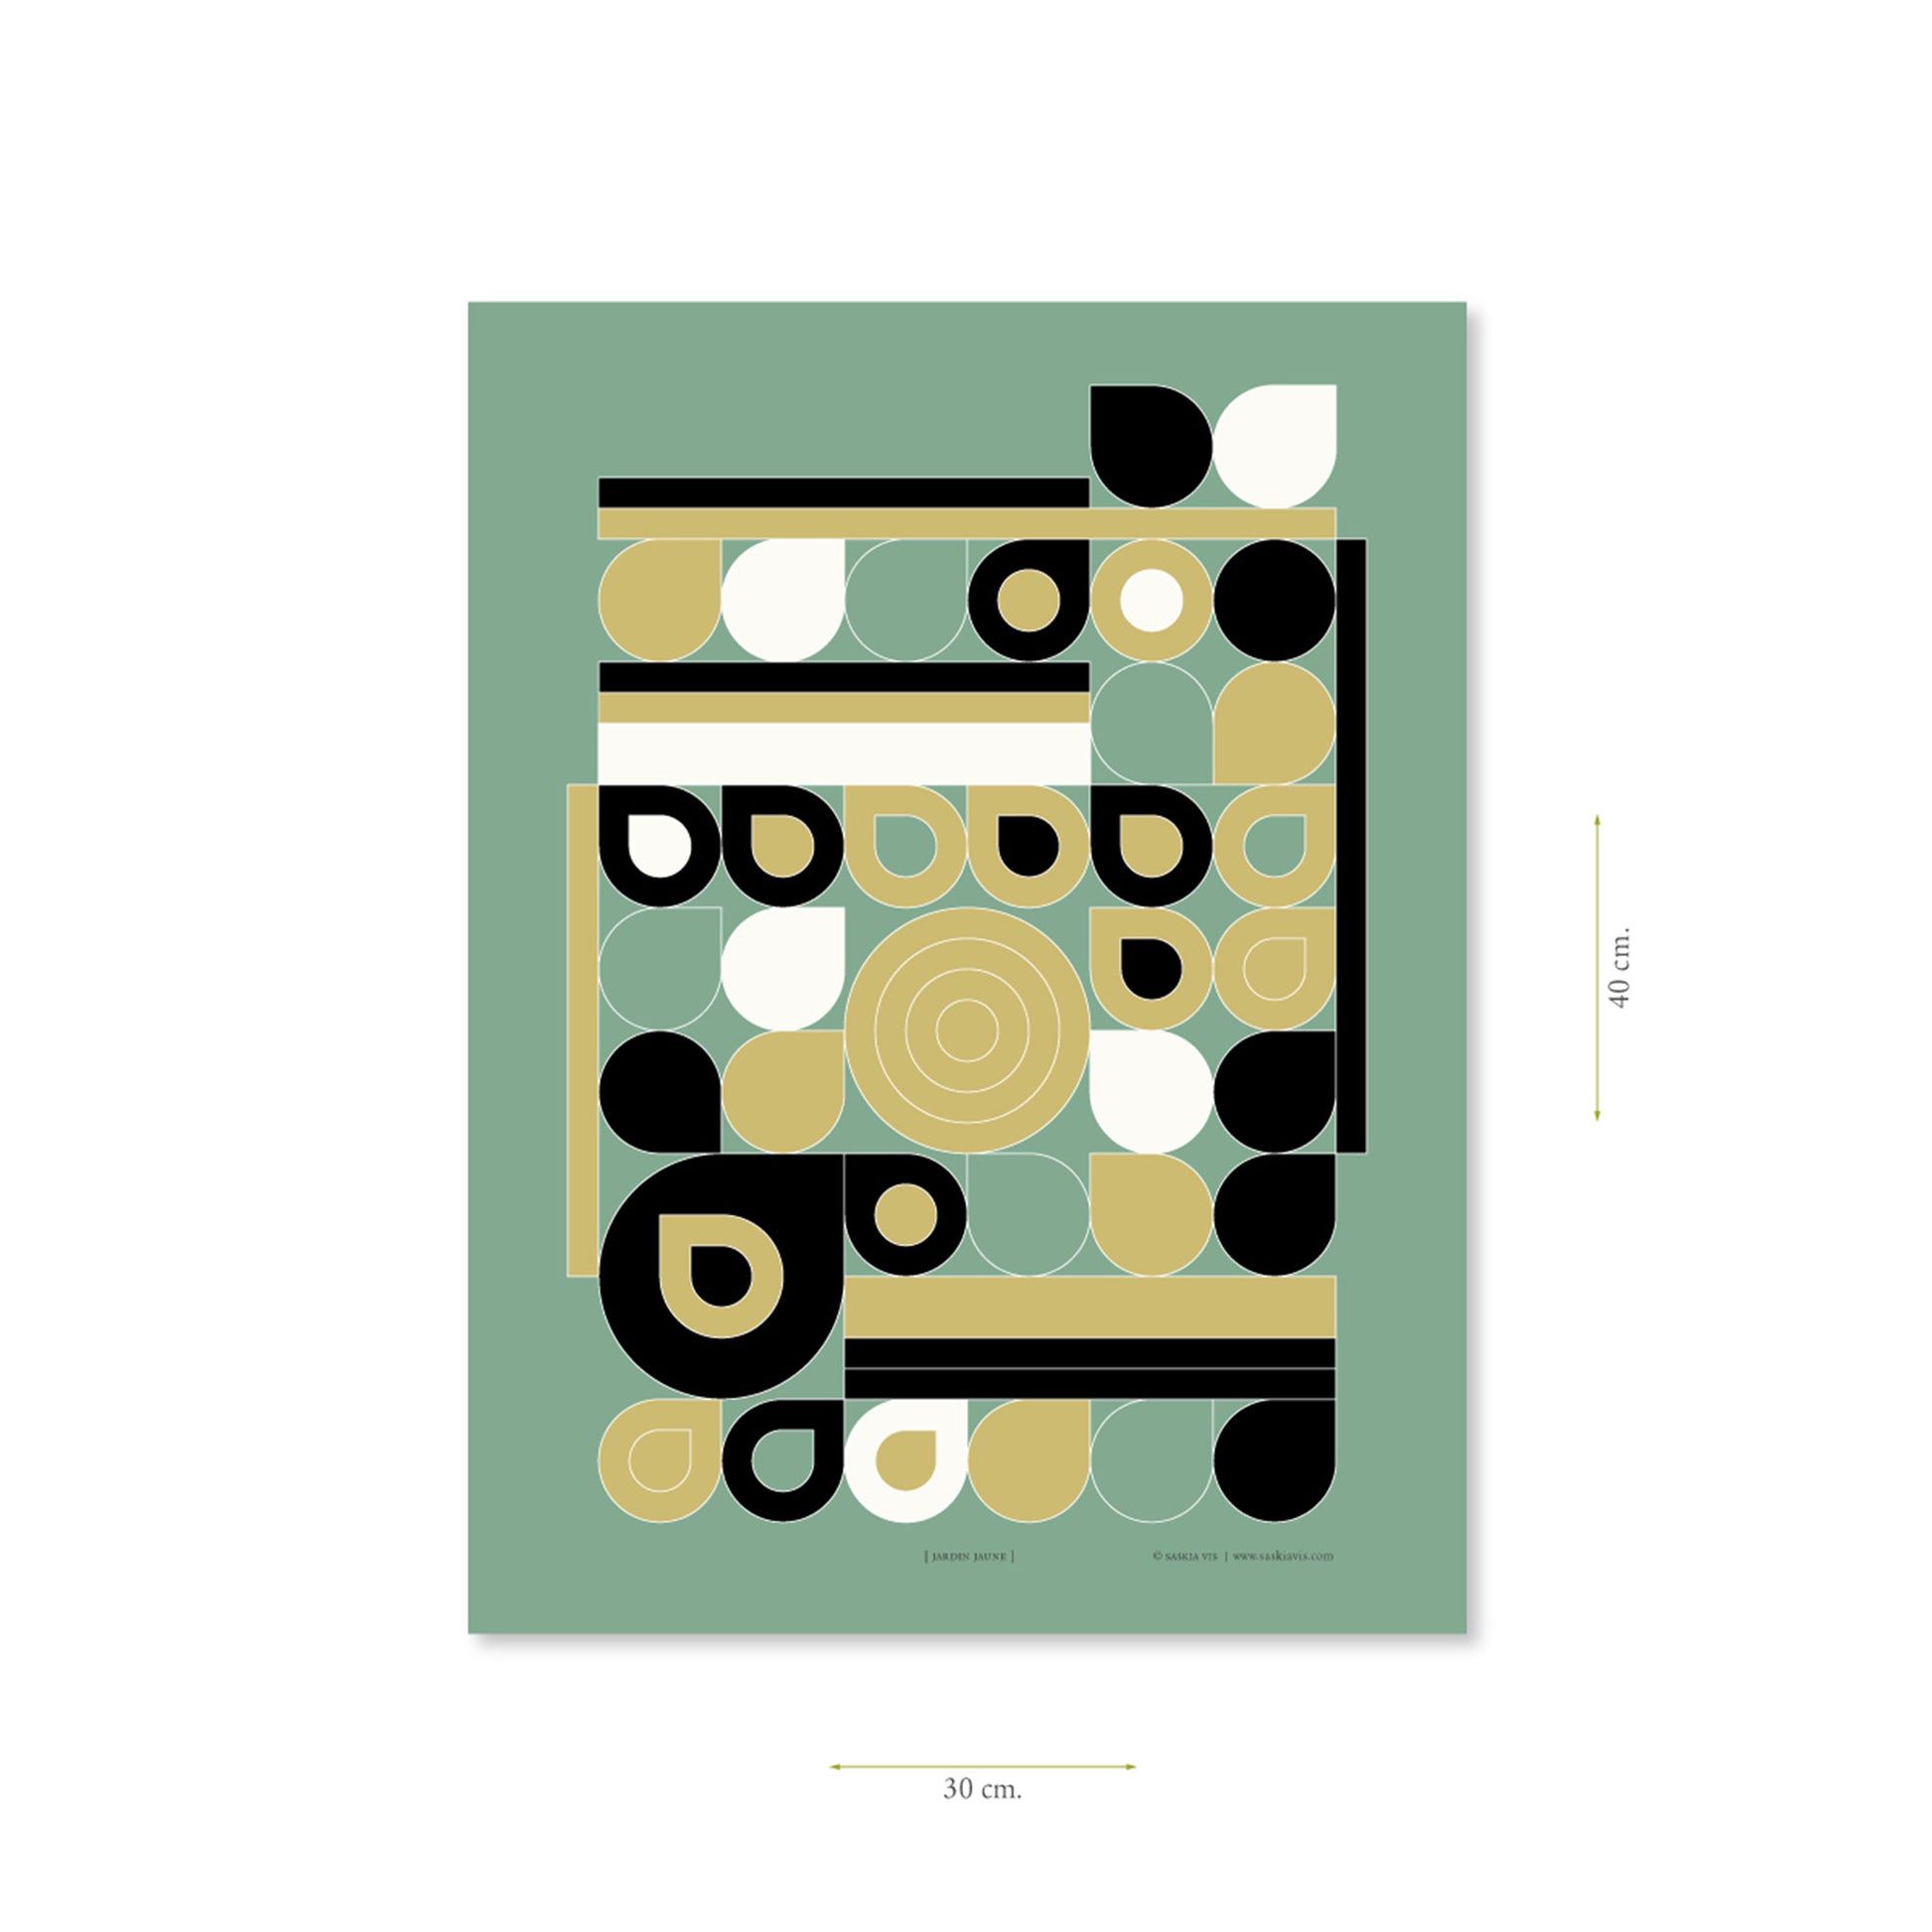 Productafbeelding poster "jardin jaune" met aanduiding van het formaat erop weergegeven 30 x 40 cm